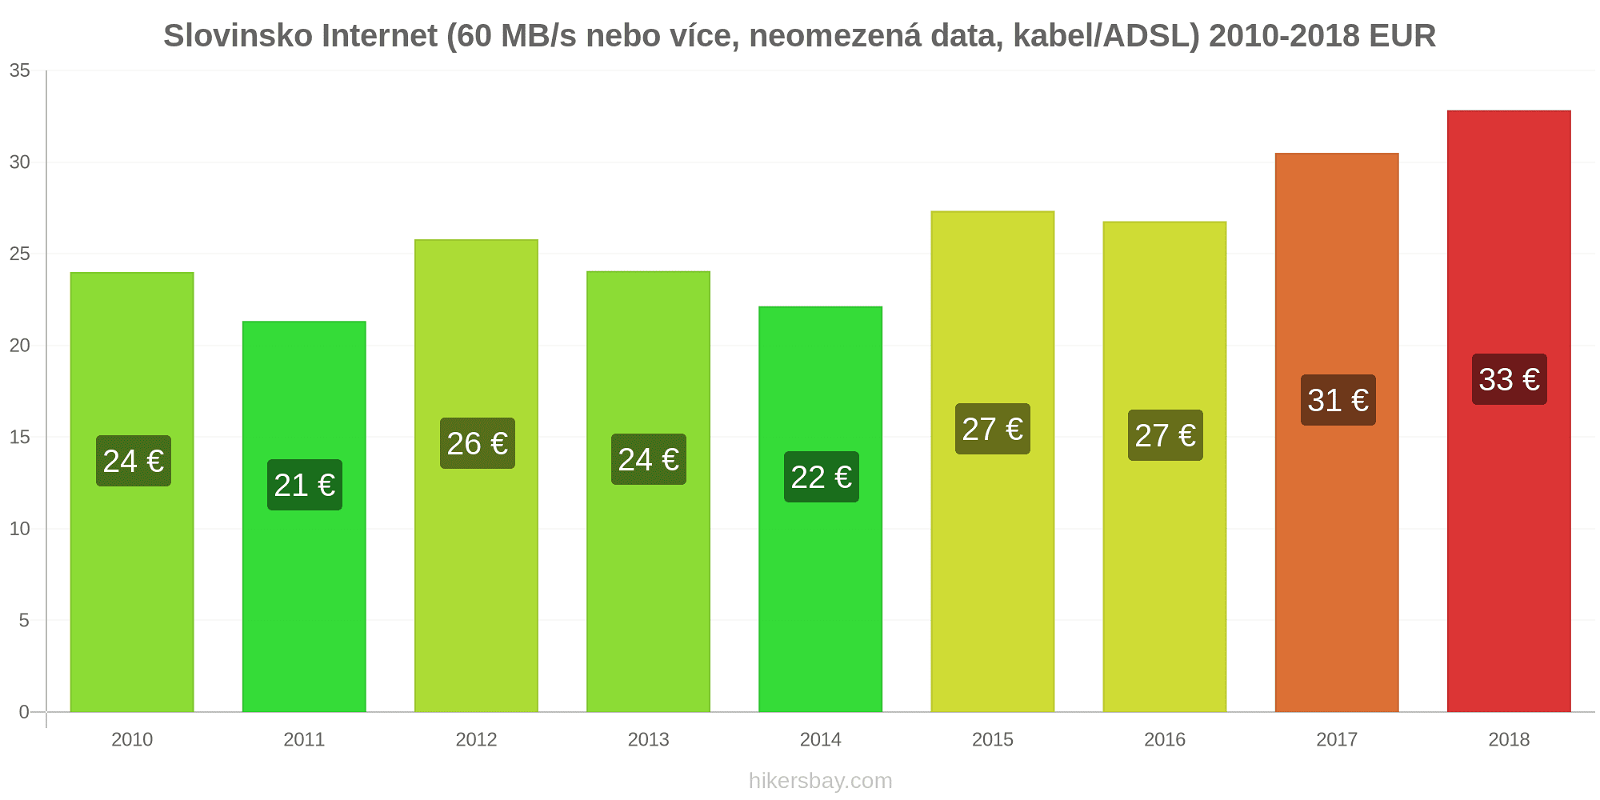 Slovinsko změny cen Internet (60 Mbps nebo více, neomezená data, kabel/ADSL) hikersbay.com